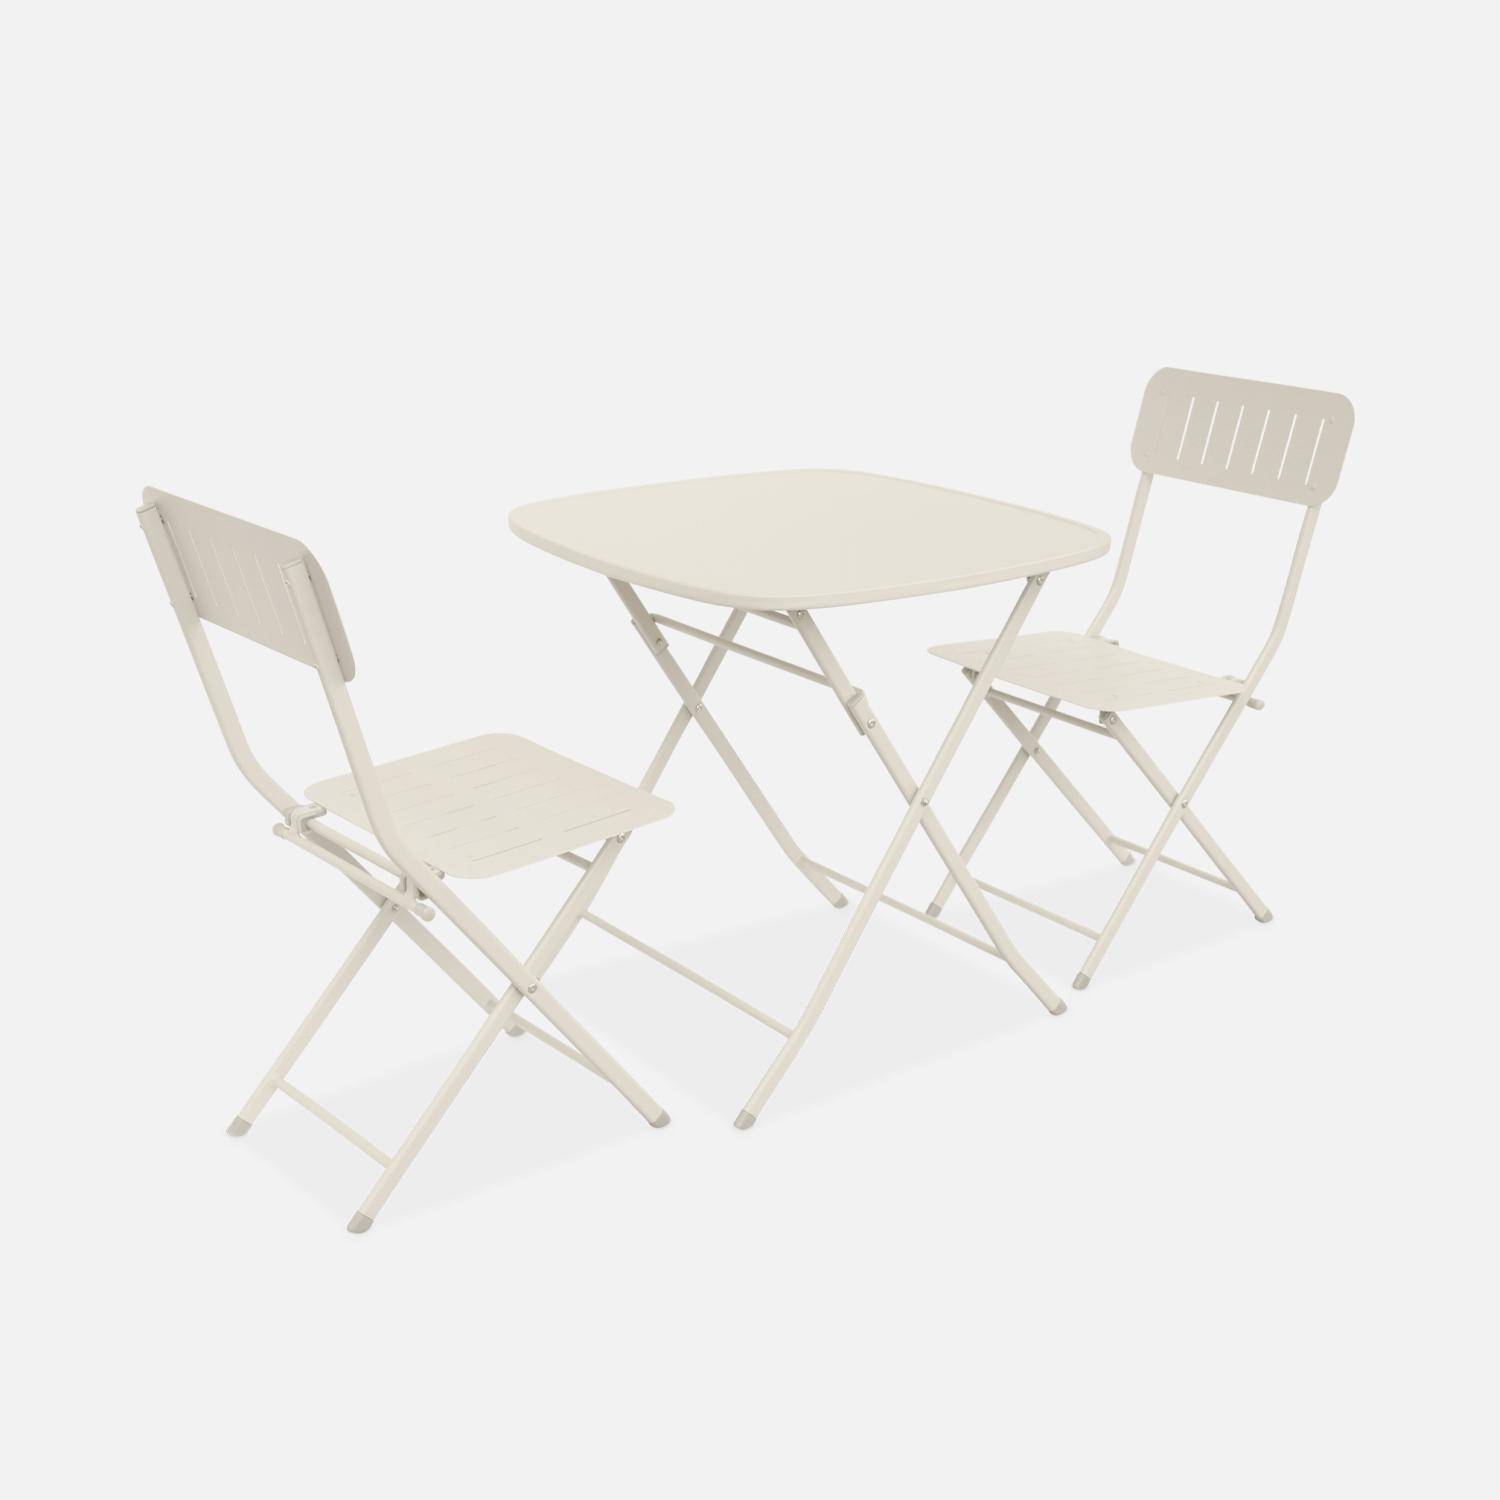 Mesa de jardín plegable tipo bistrot de color blanco roto con 2 sillas plegables de acero galvanizado resistente Photo1